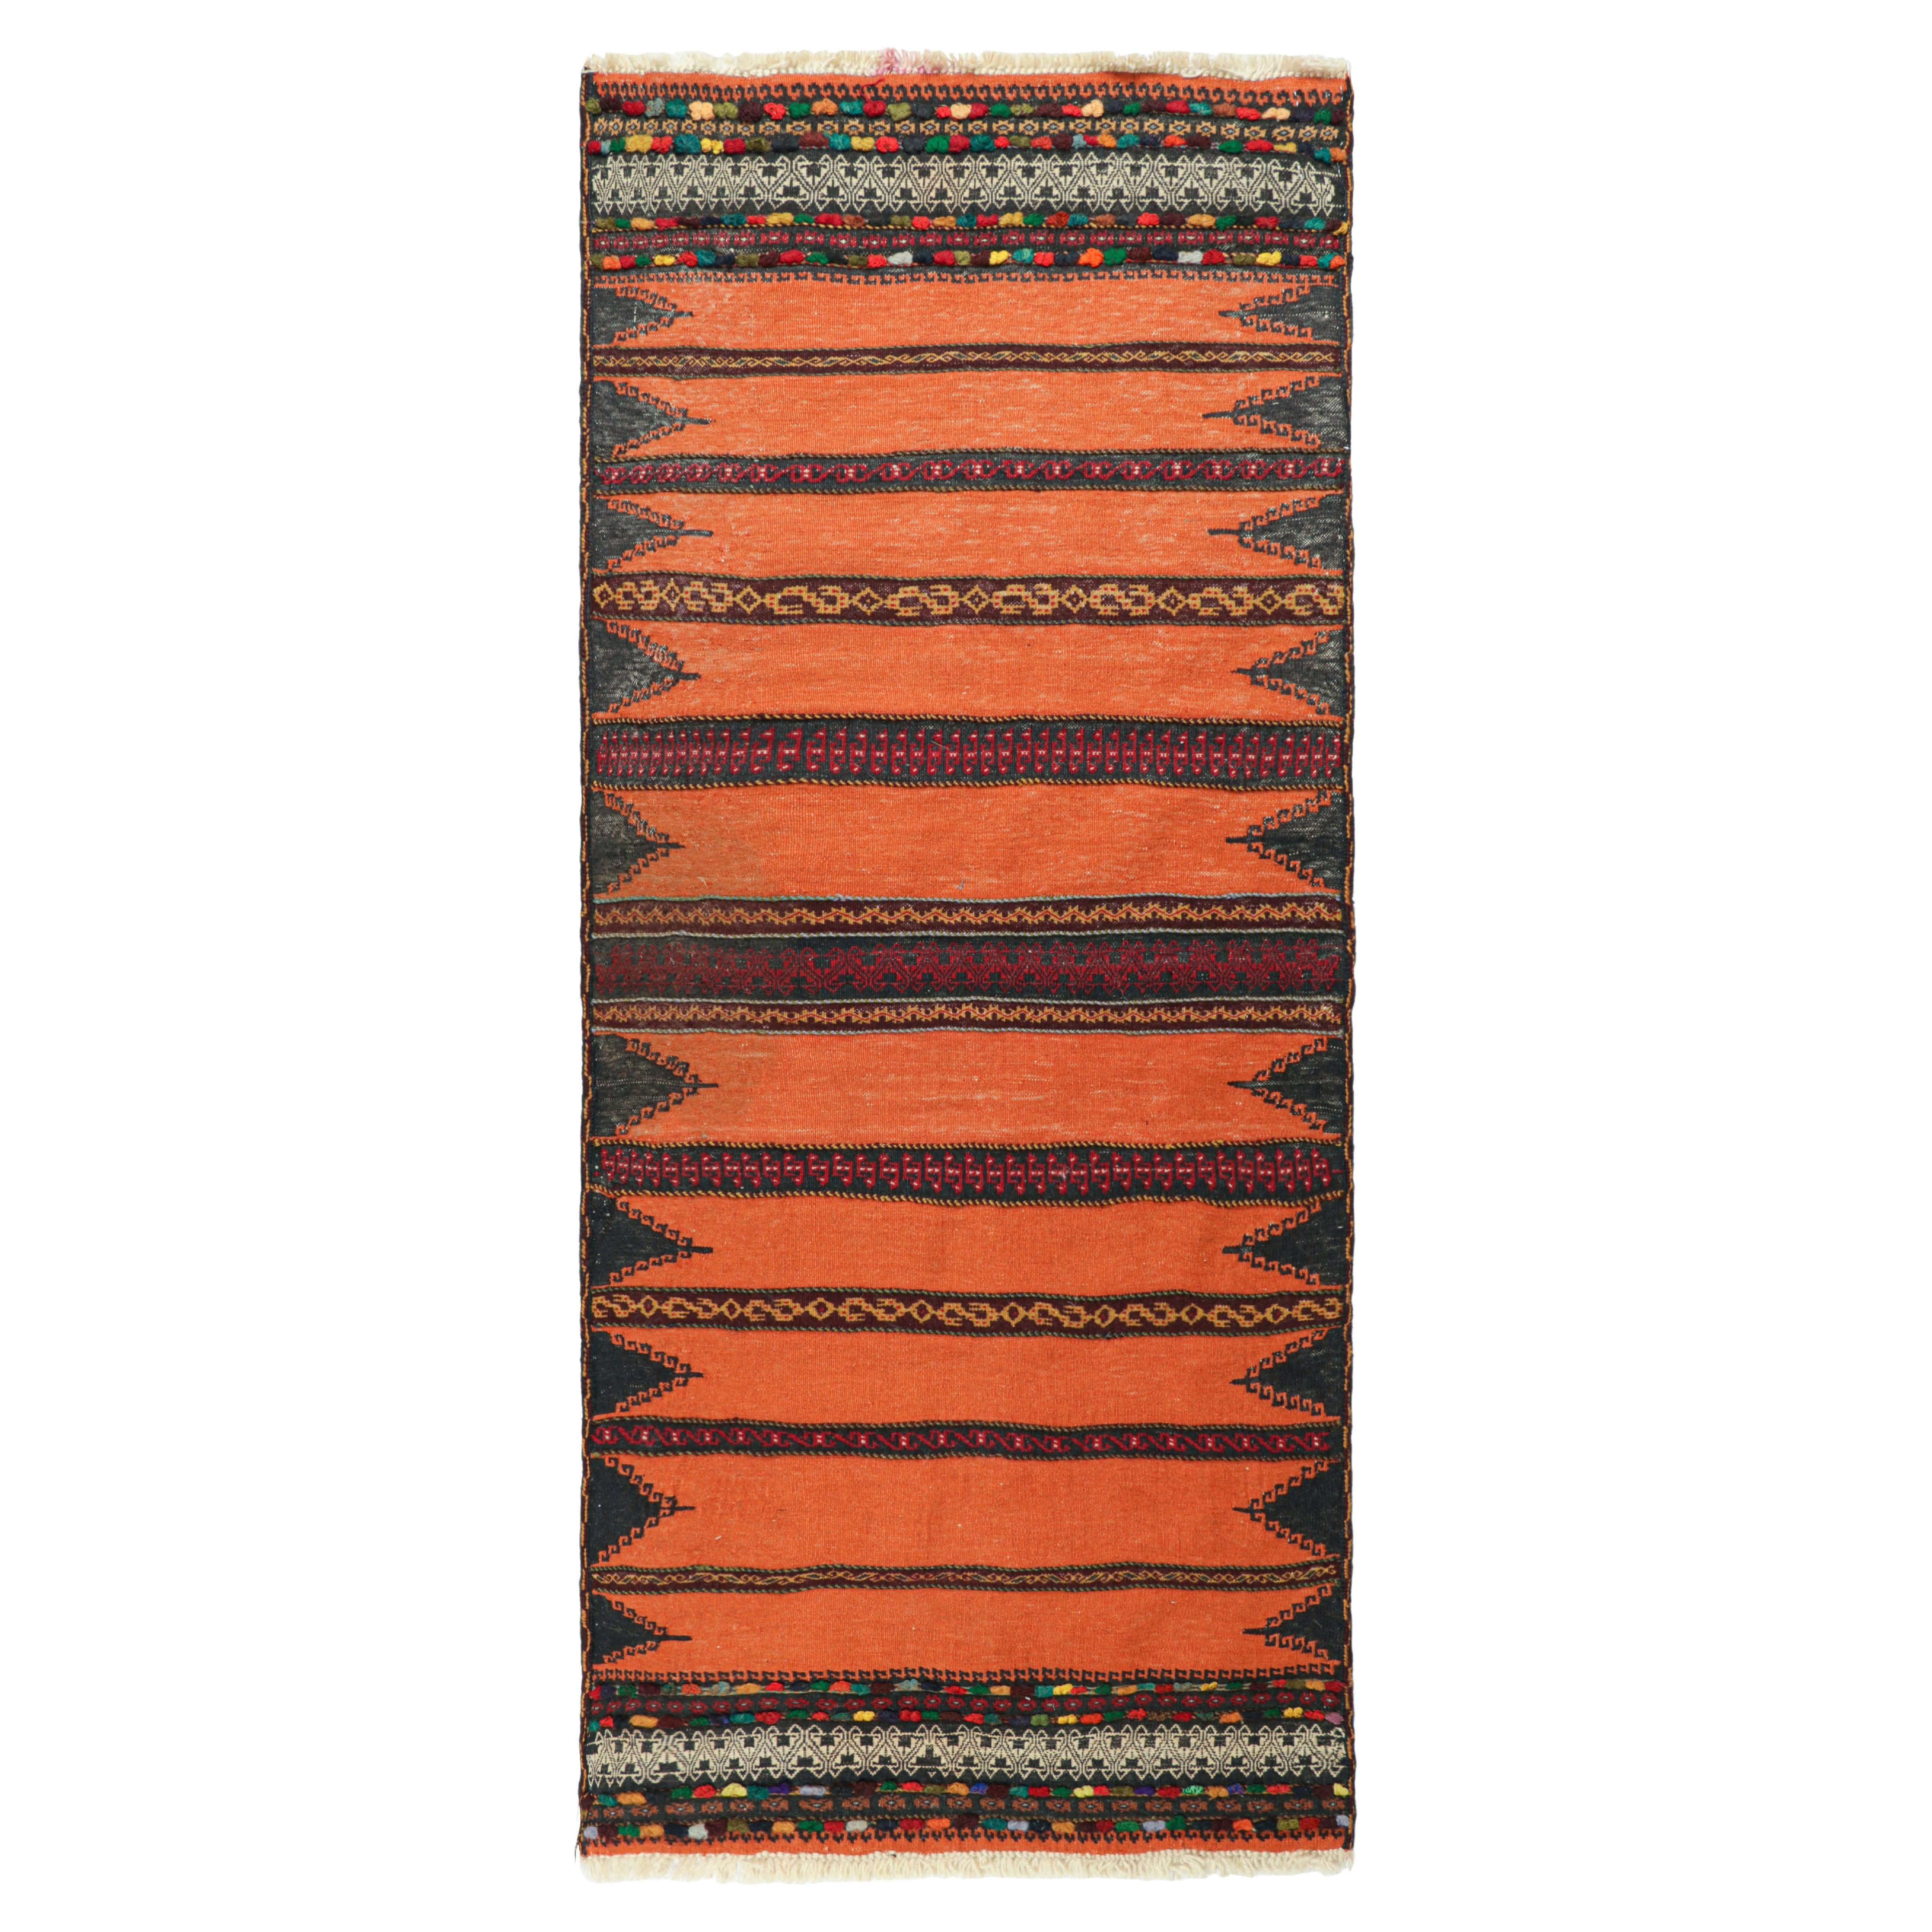 Vintage Afghan Kilim in Orange with Geometric Stripes, from Rug & Kilim